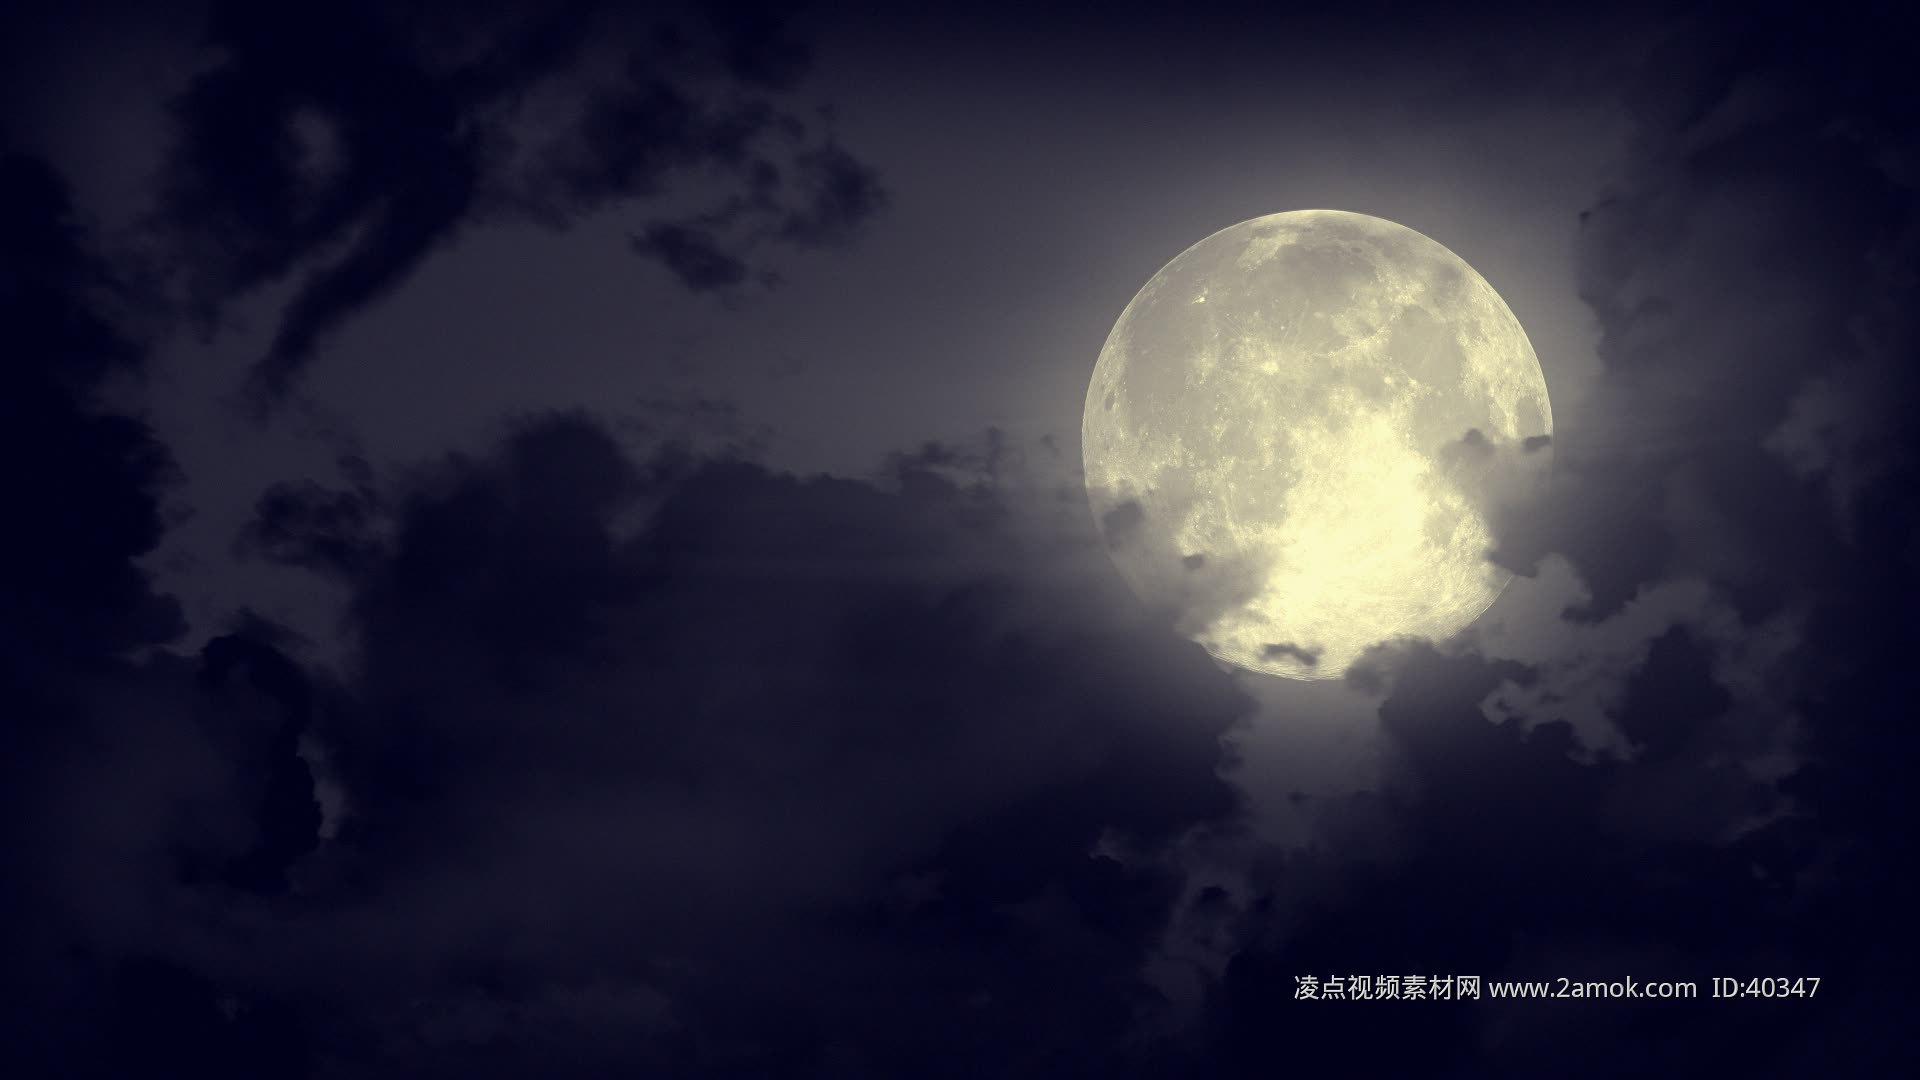 延时︱成都赏月 看超级月亮穿越云层_四川在线